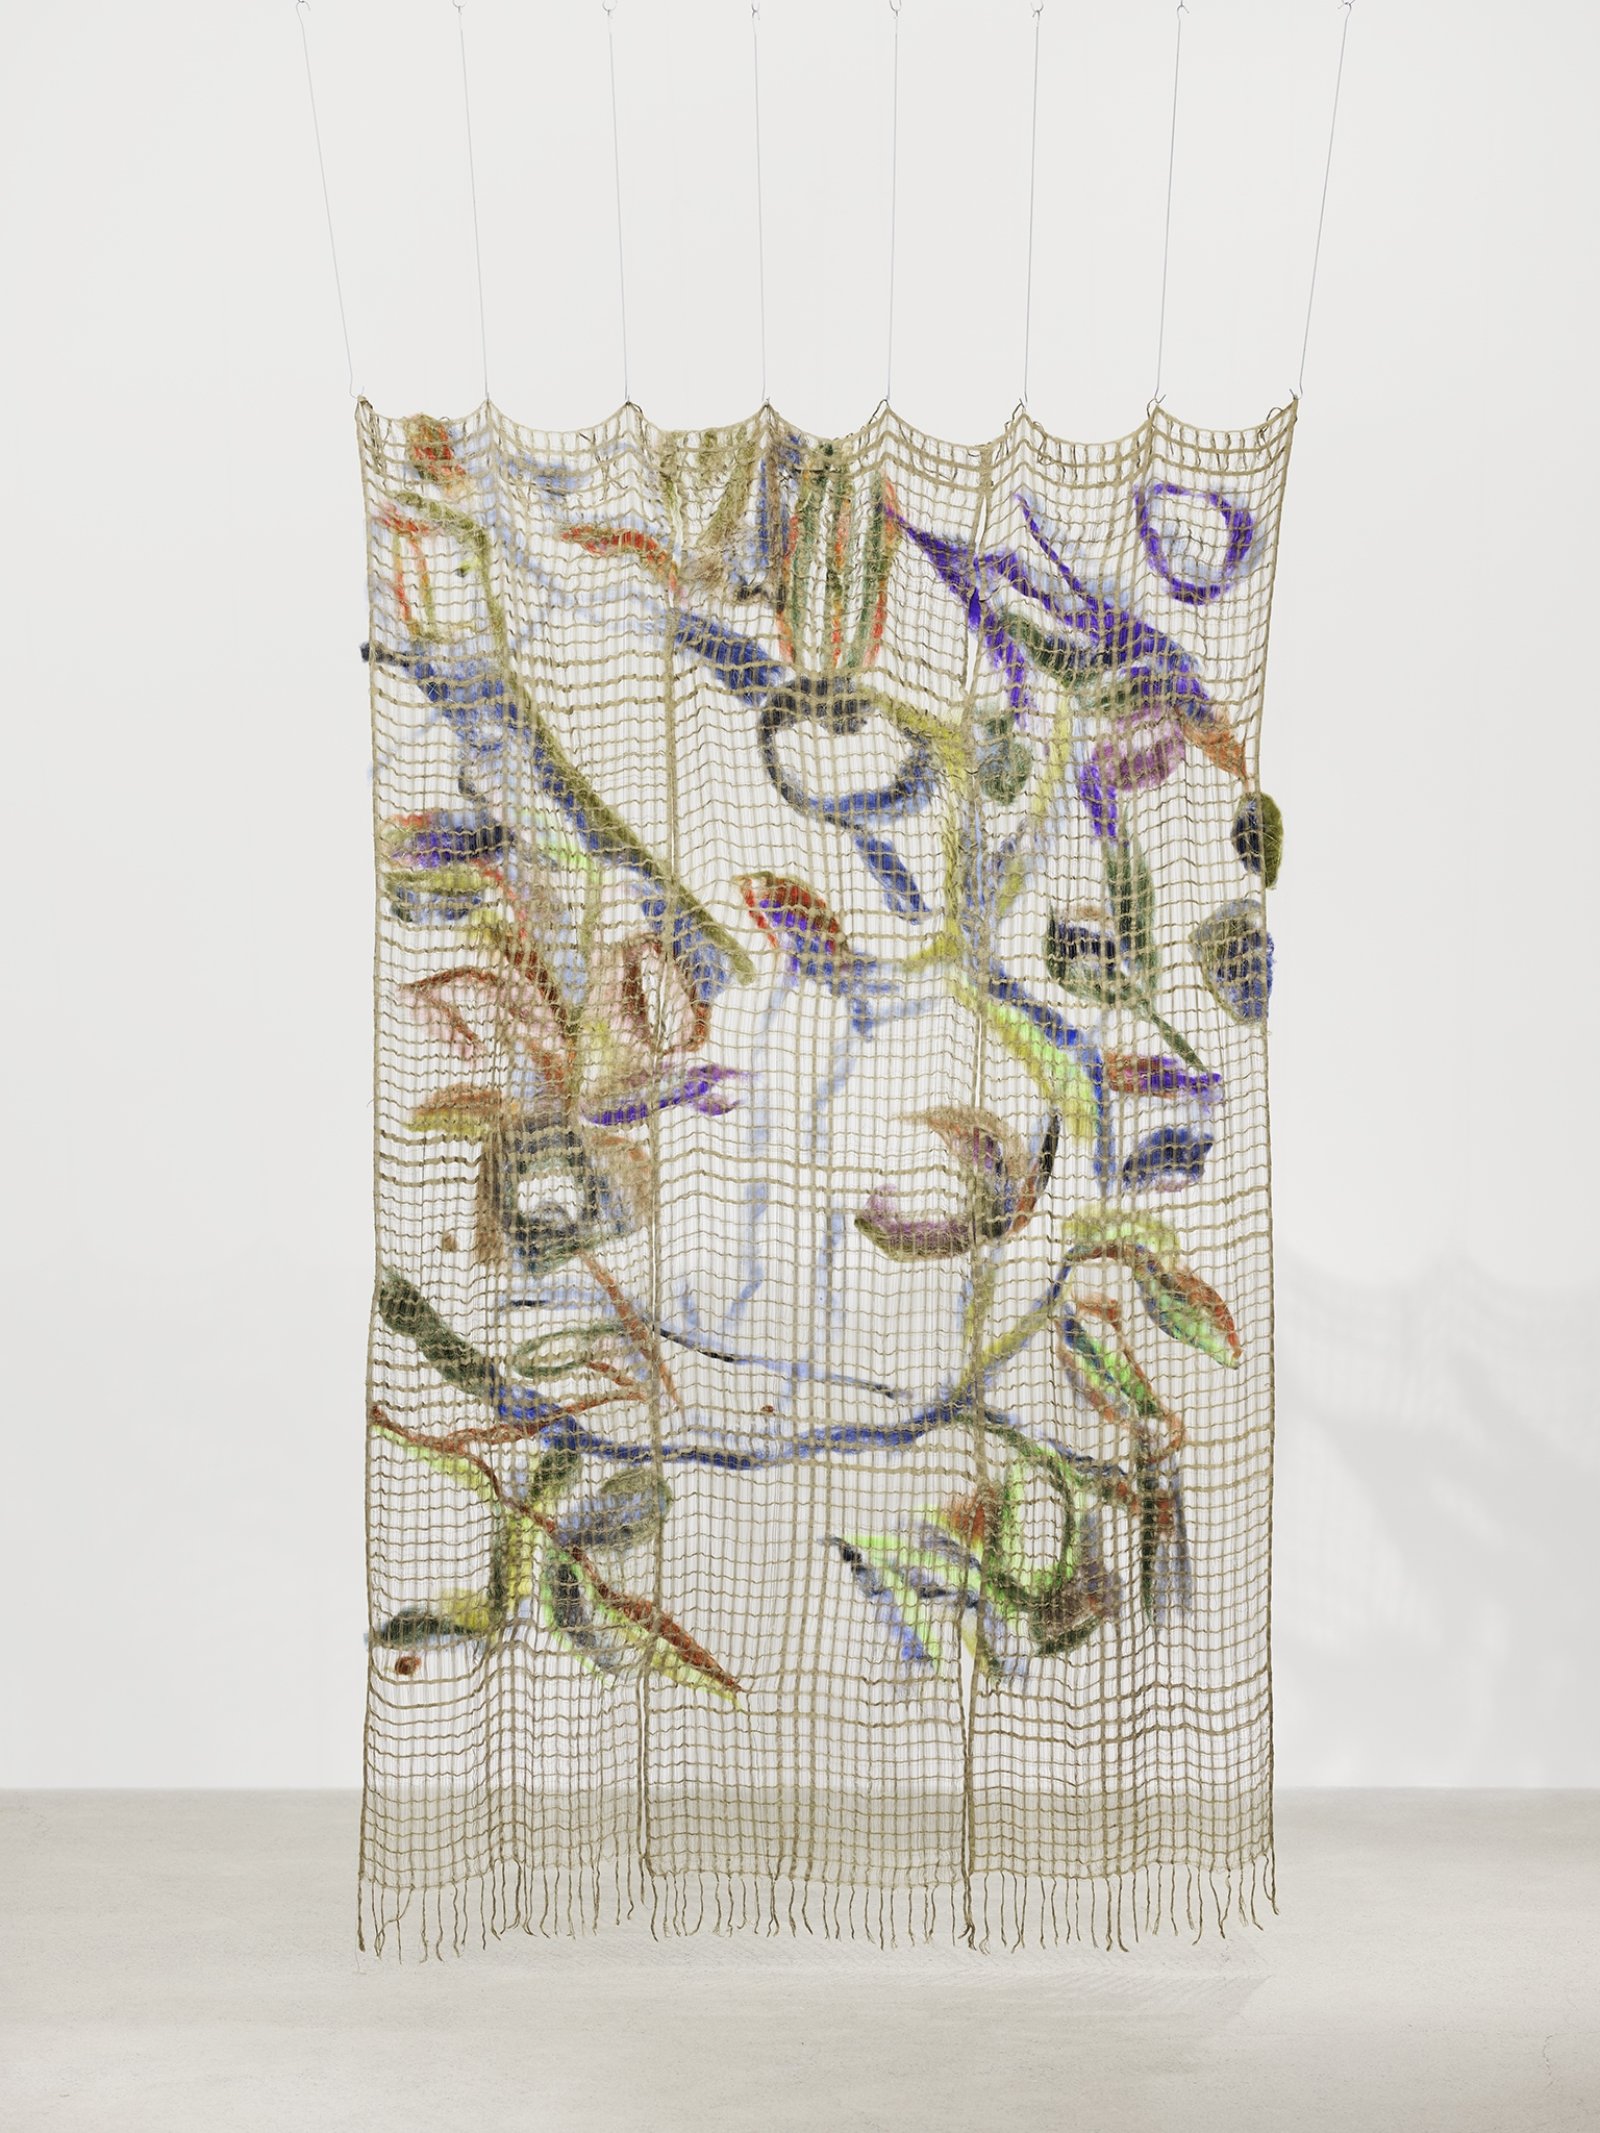 Rebecca Brewer, Surplus World, 2019, silk, wool, steel hooks, 90 x 63 in. (229 x 160 cm)